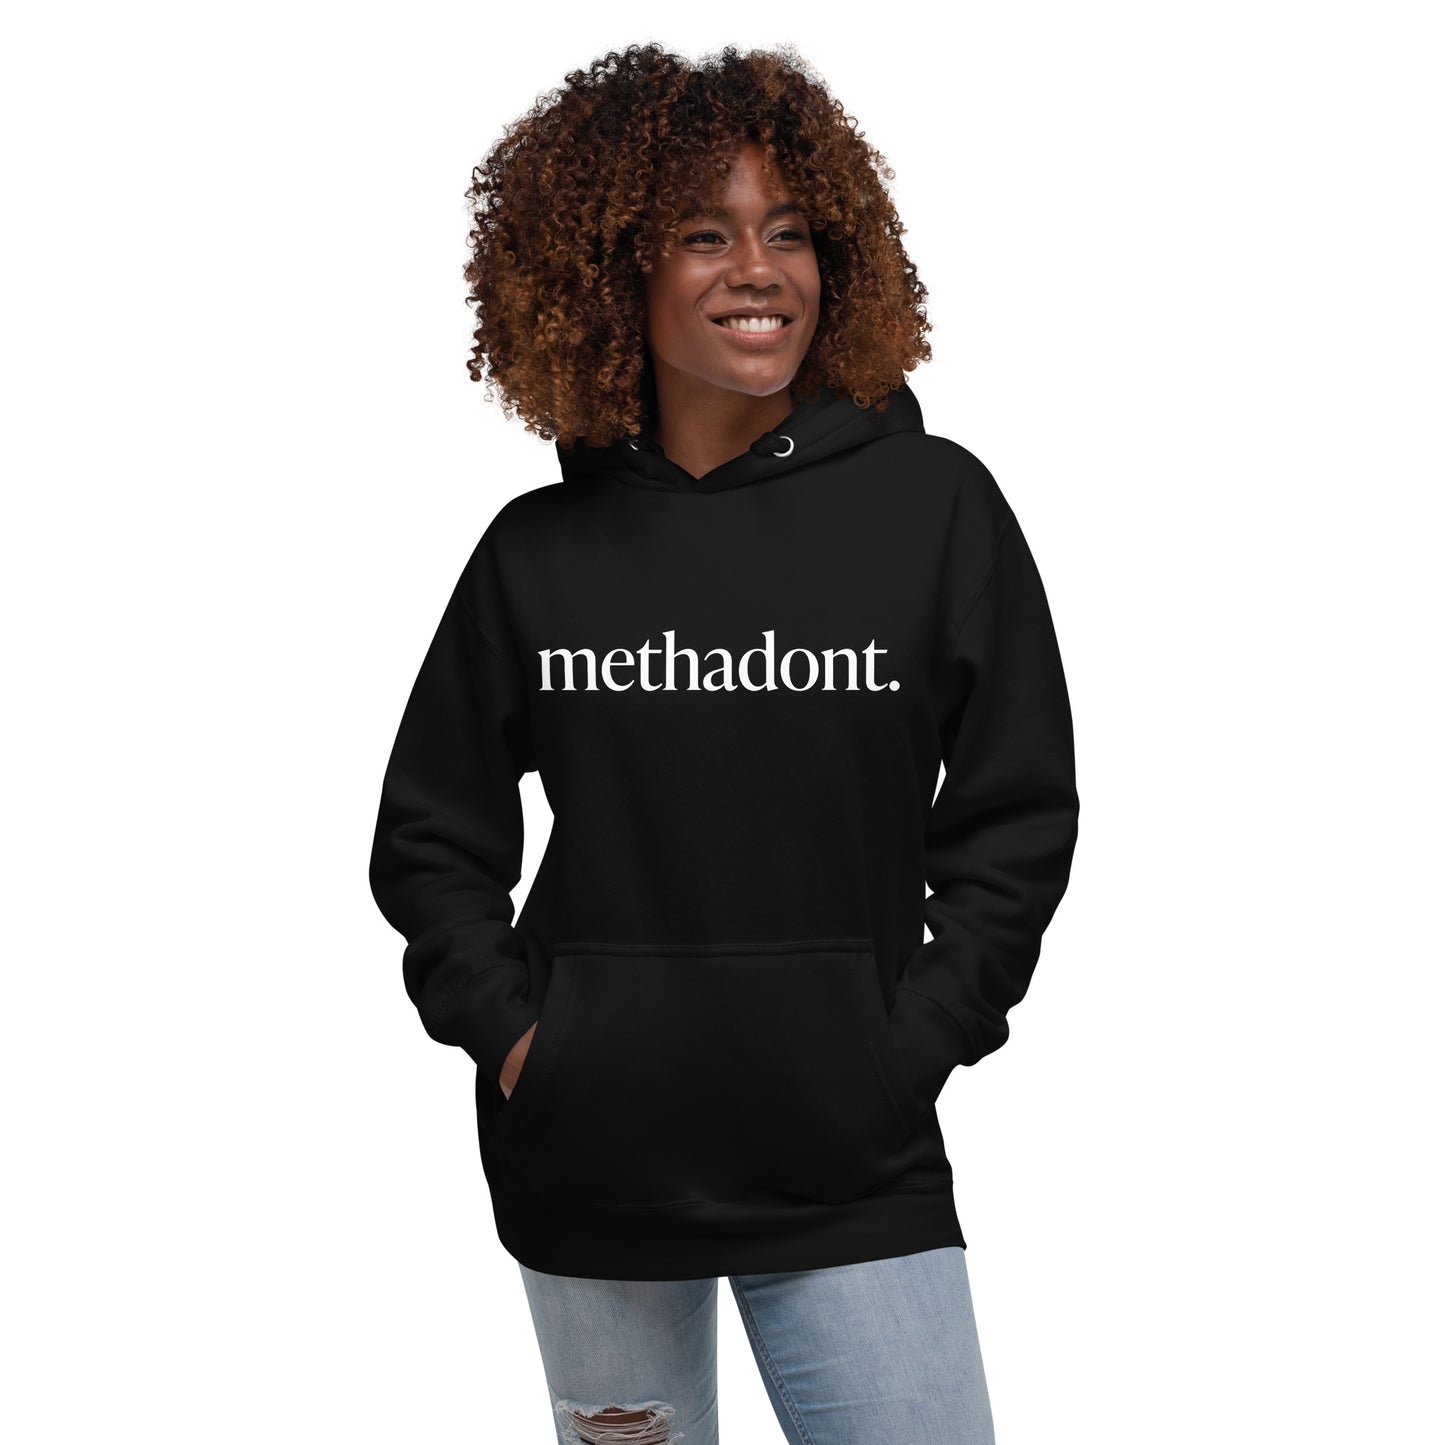 methadont heavyweight hoodie